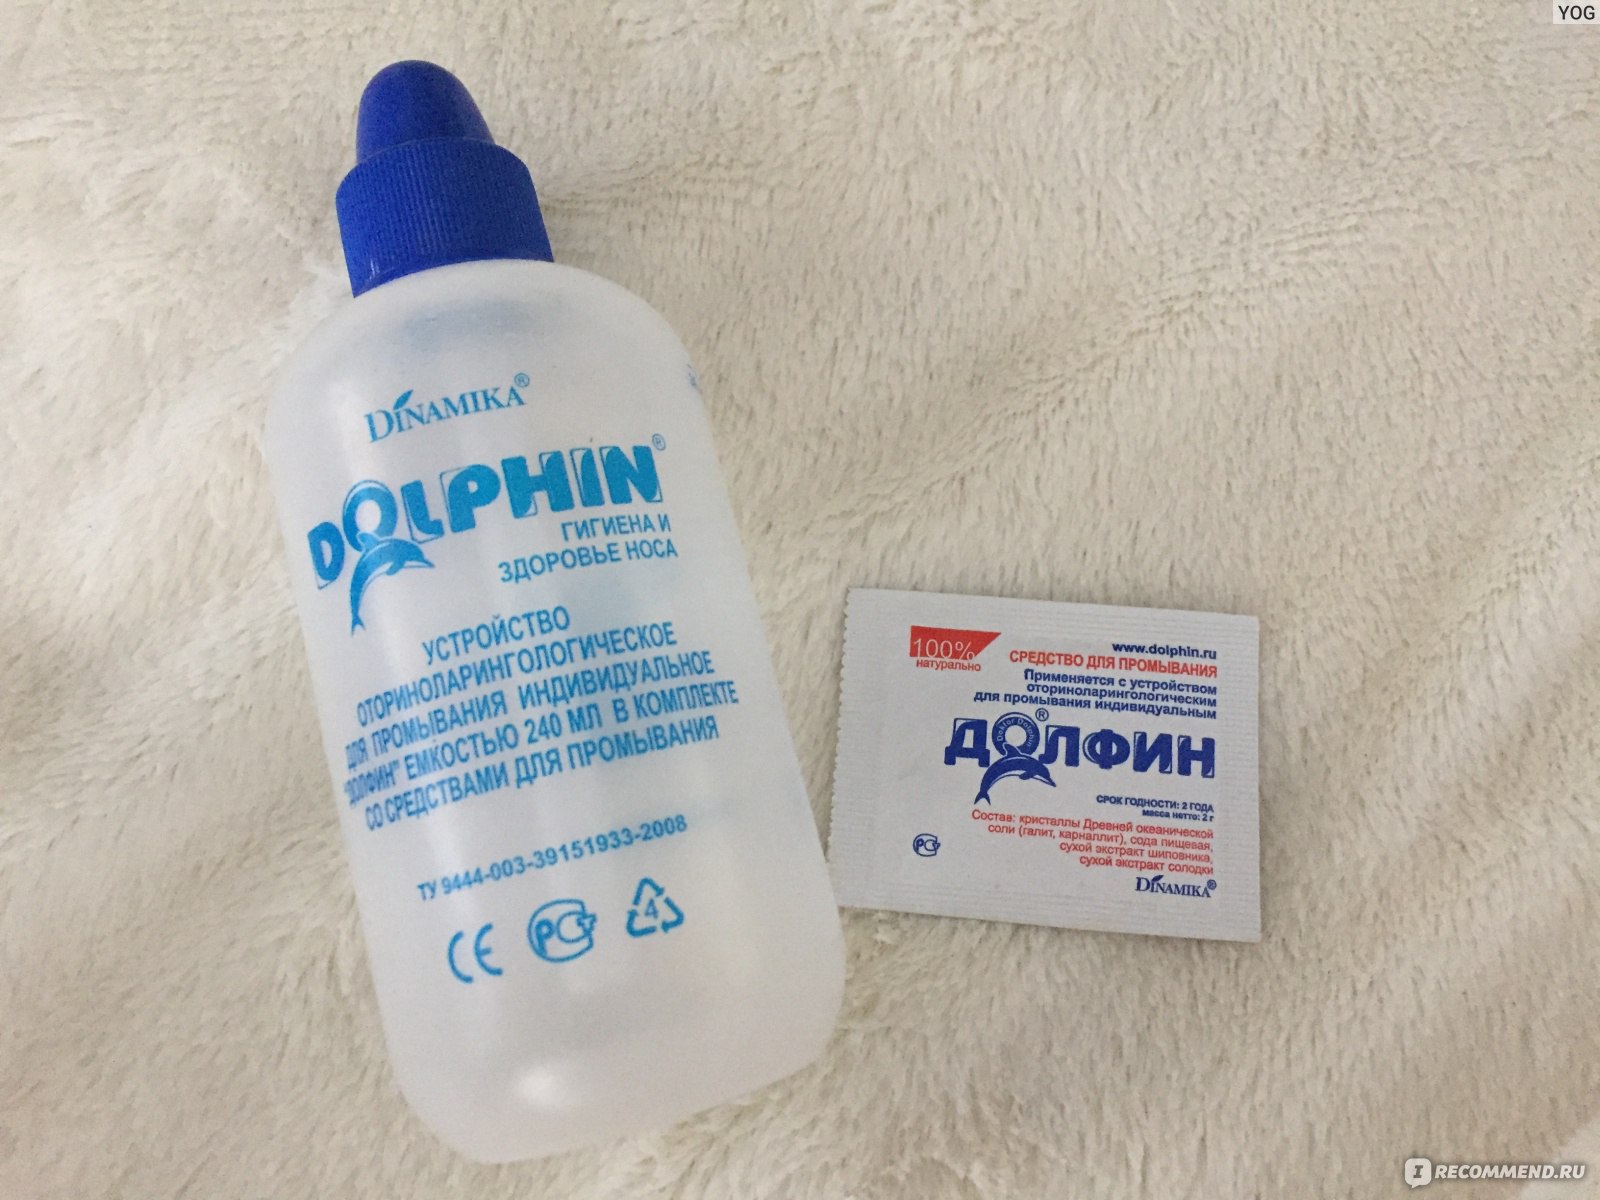 Долфин устройство для промывания носа для детей. Долфин лейка для промывания носа. Dolphin средство для промывания носа. Долфин пакеты для промывания носа. Долфин для промывания носа детский.